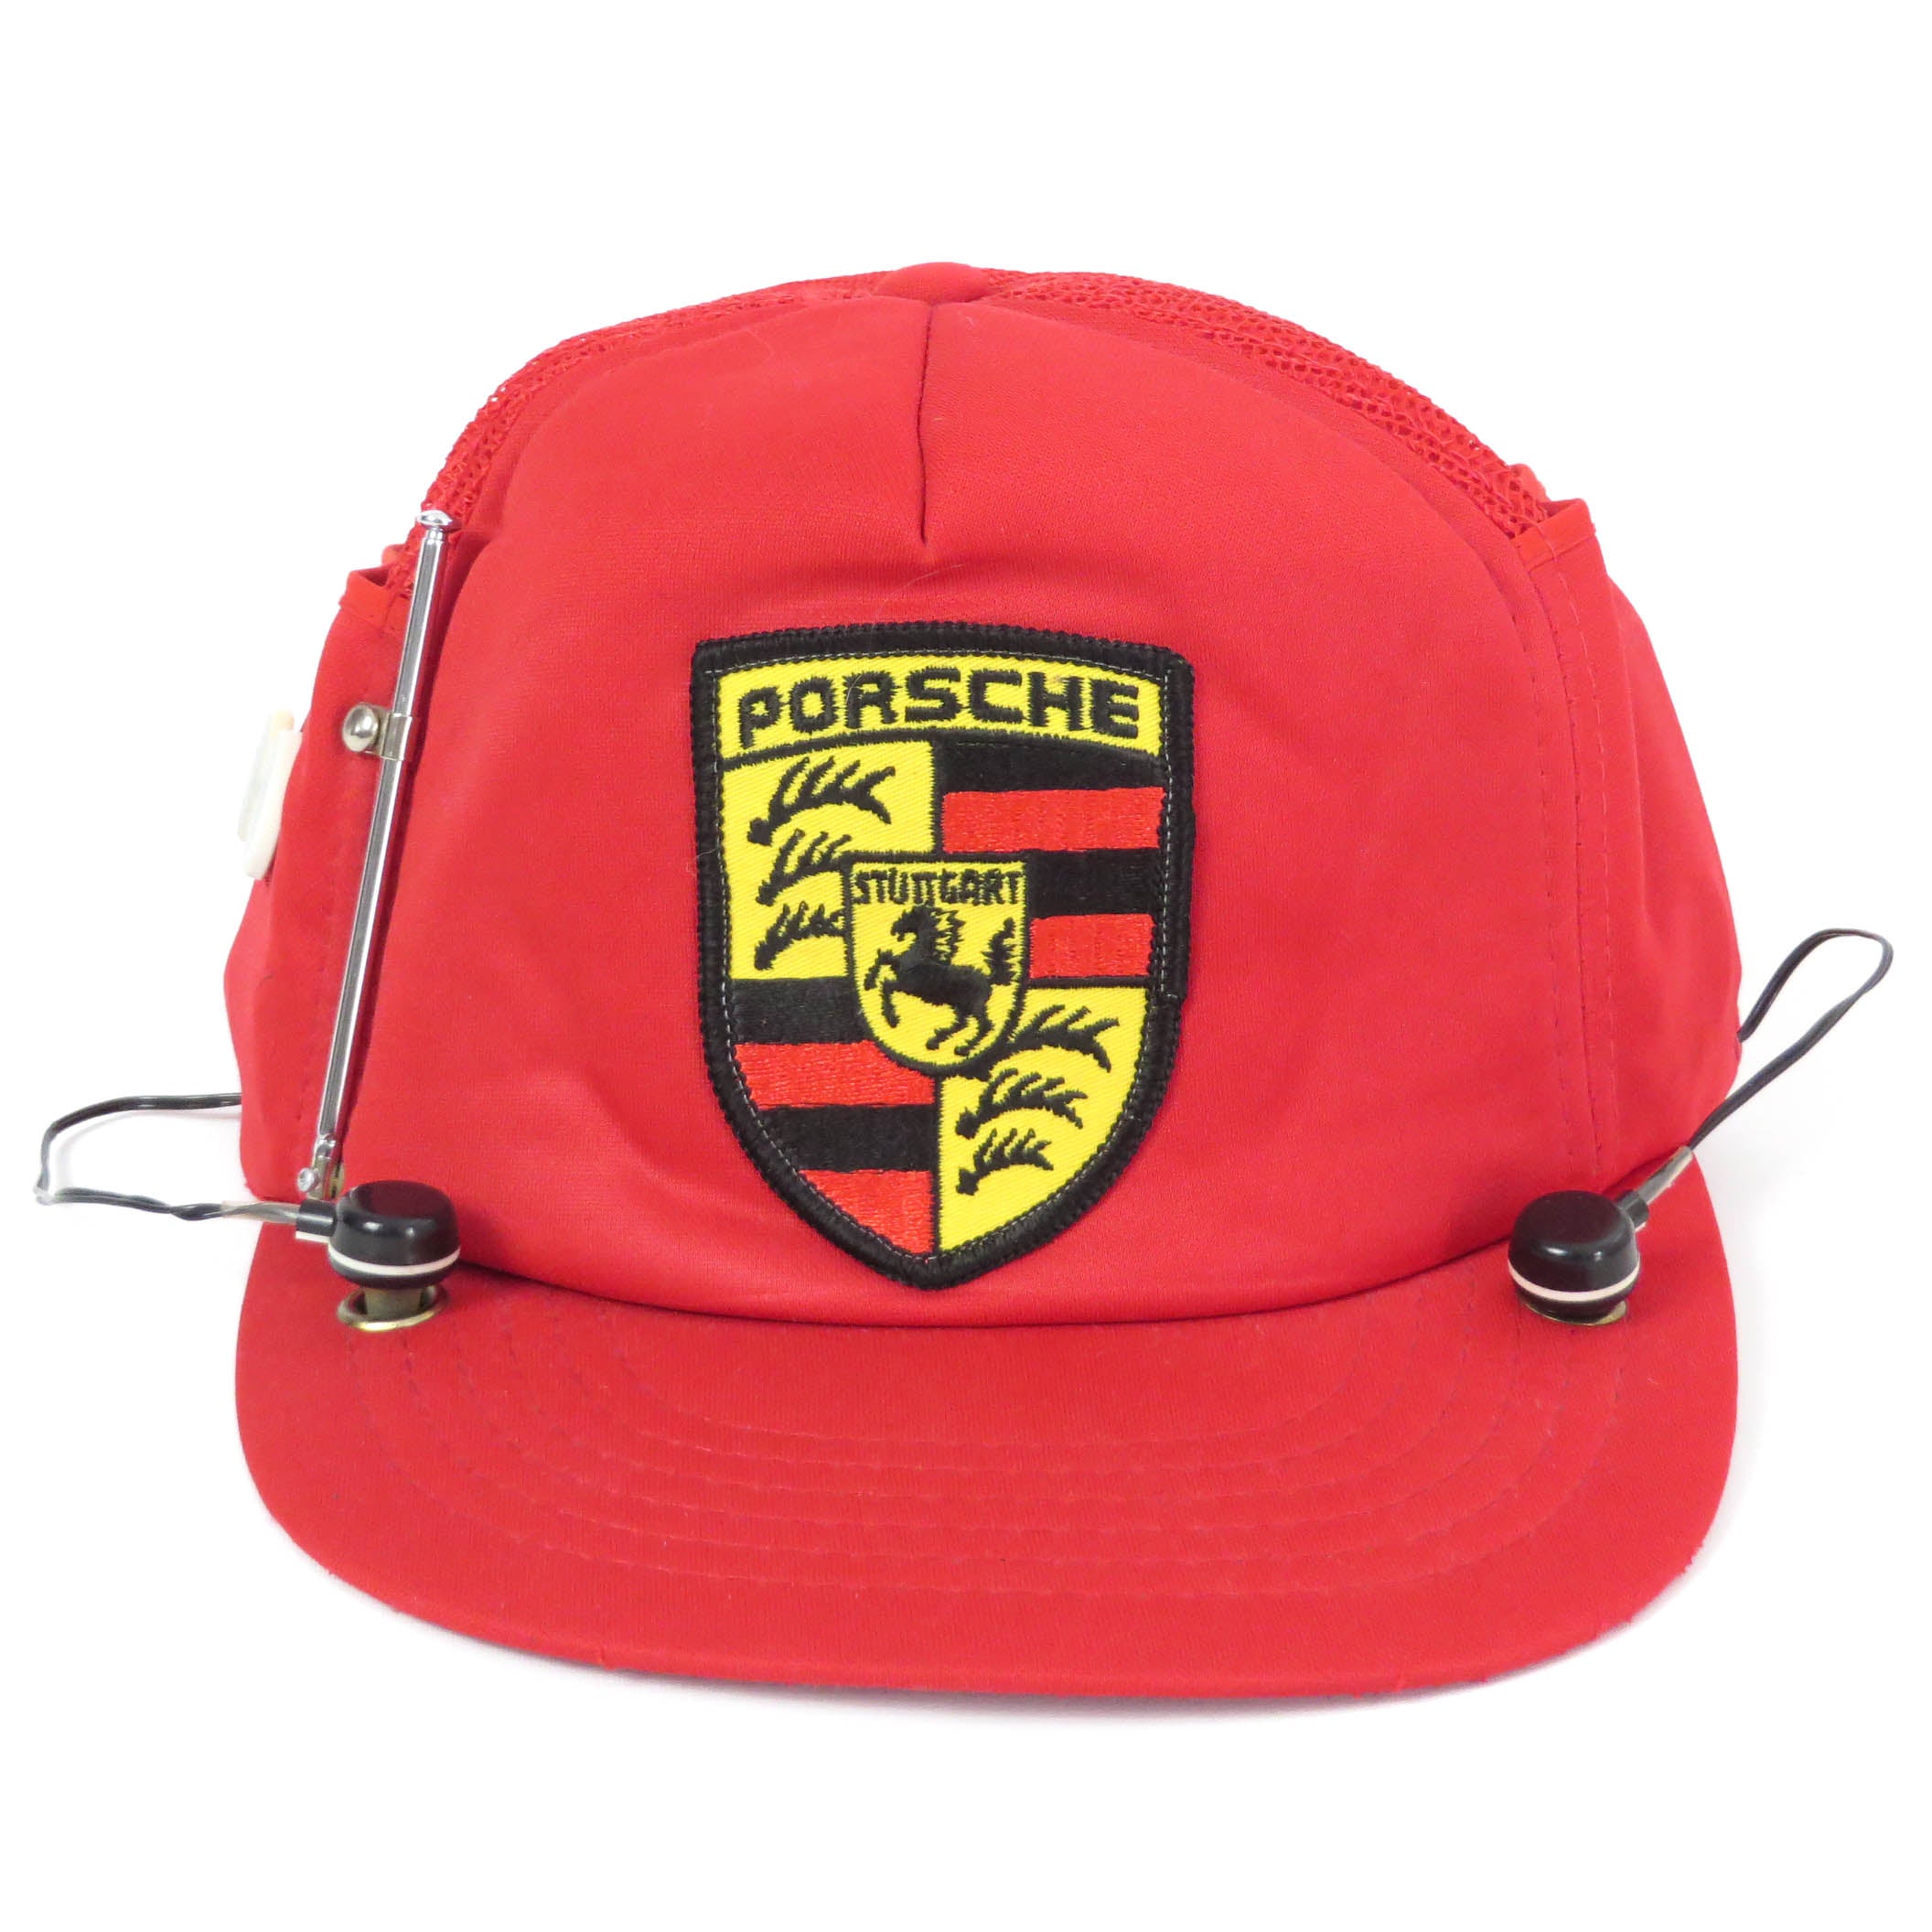 Vintage Porsche AM/FM Radio Snapback Hat